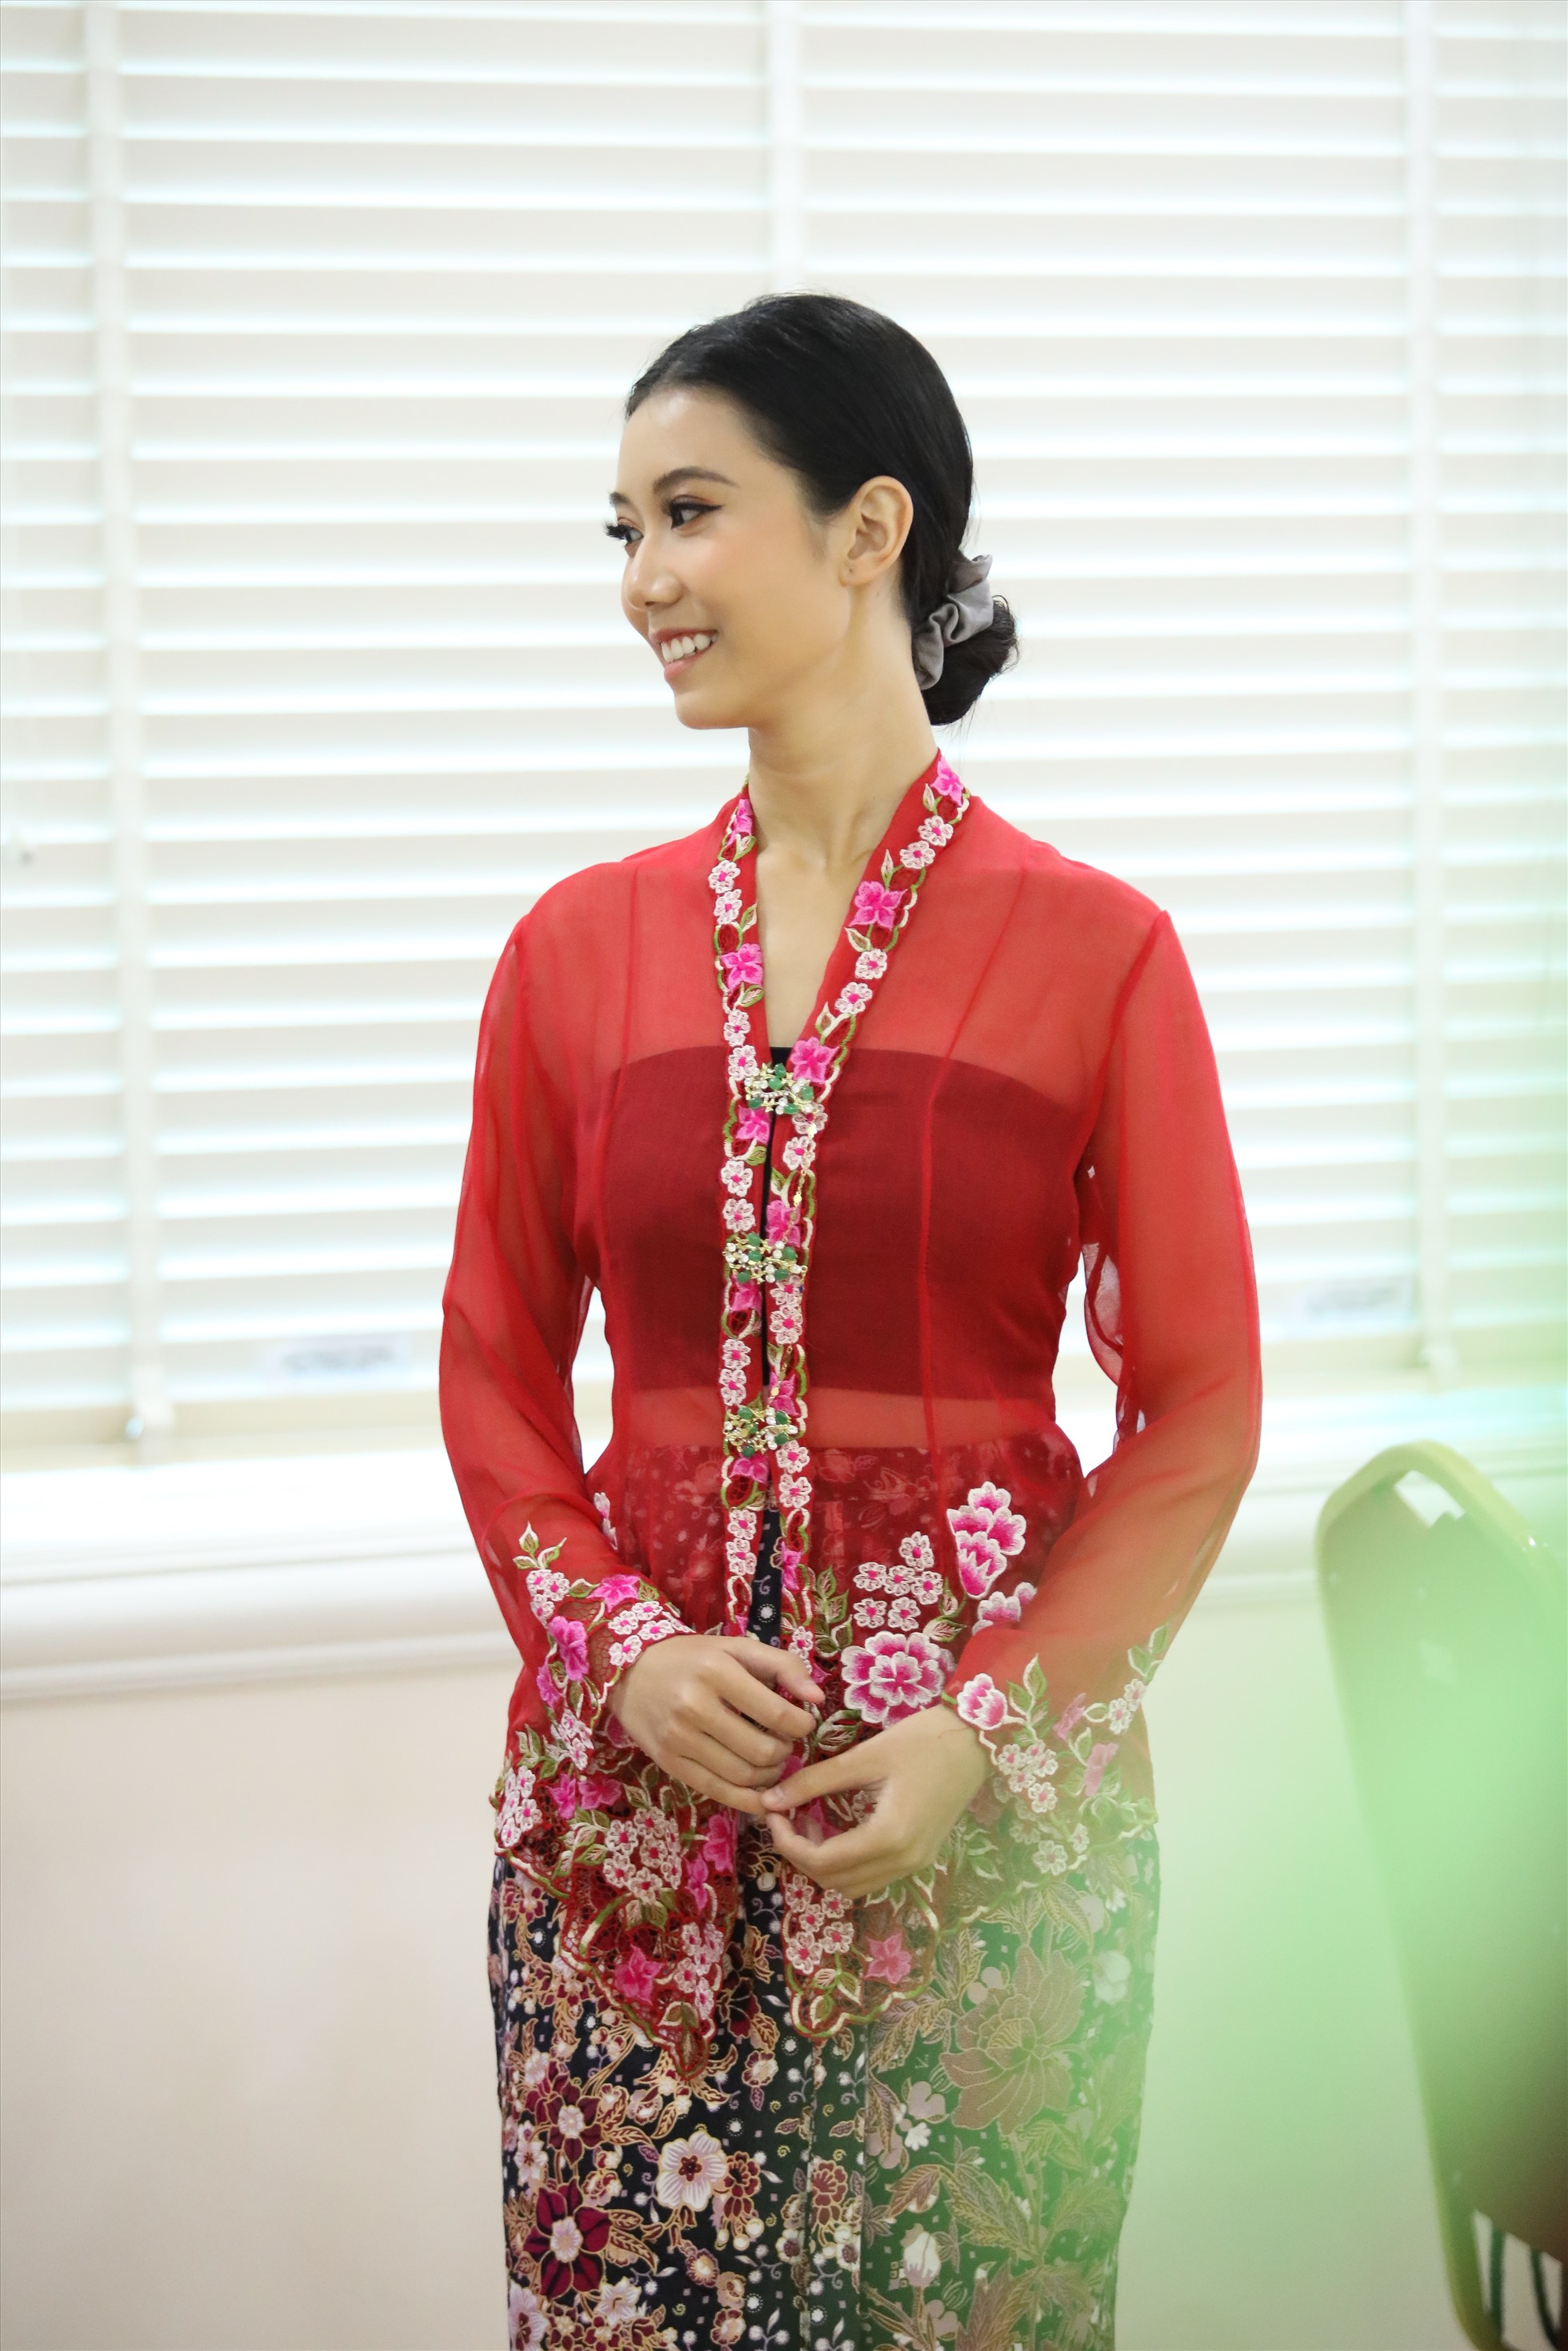 Mới đây, Nguyễn Vĩnh Hà Phương nhận được lời mời từ BTC cuộc thi KBJ Ratu Kabeya 2022 International - một đấu trường nhan sắc quốc tế được tổ chức thường niên tại Malaysia với mục đích quảng bá du lịch và giới thiệu nét đẹp của trang phục truyền thống Kabeya.